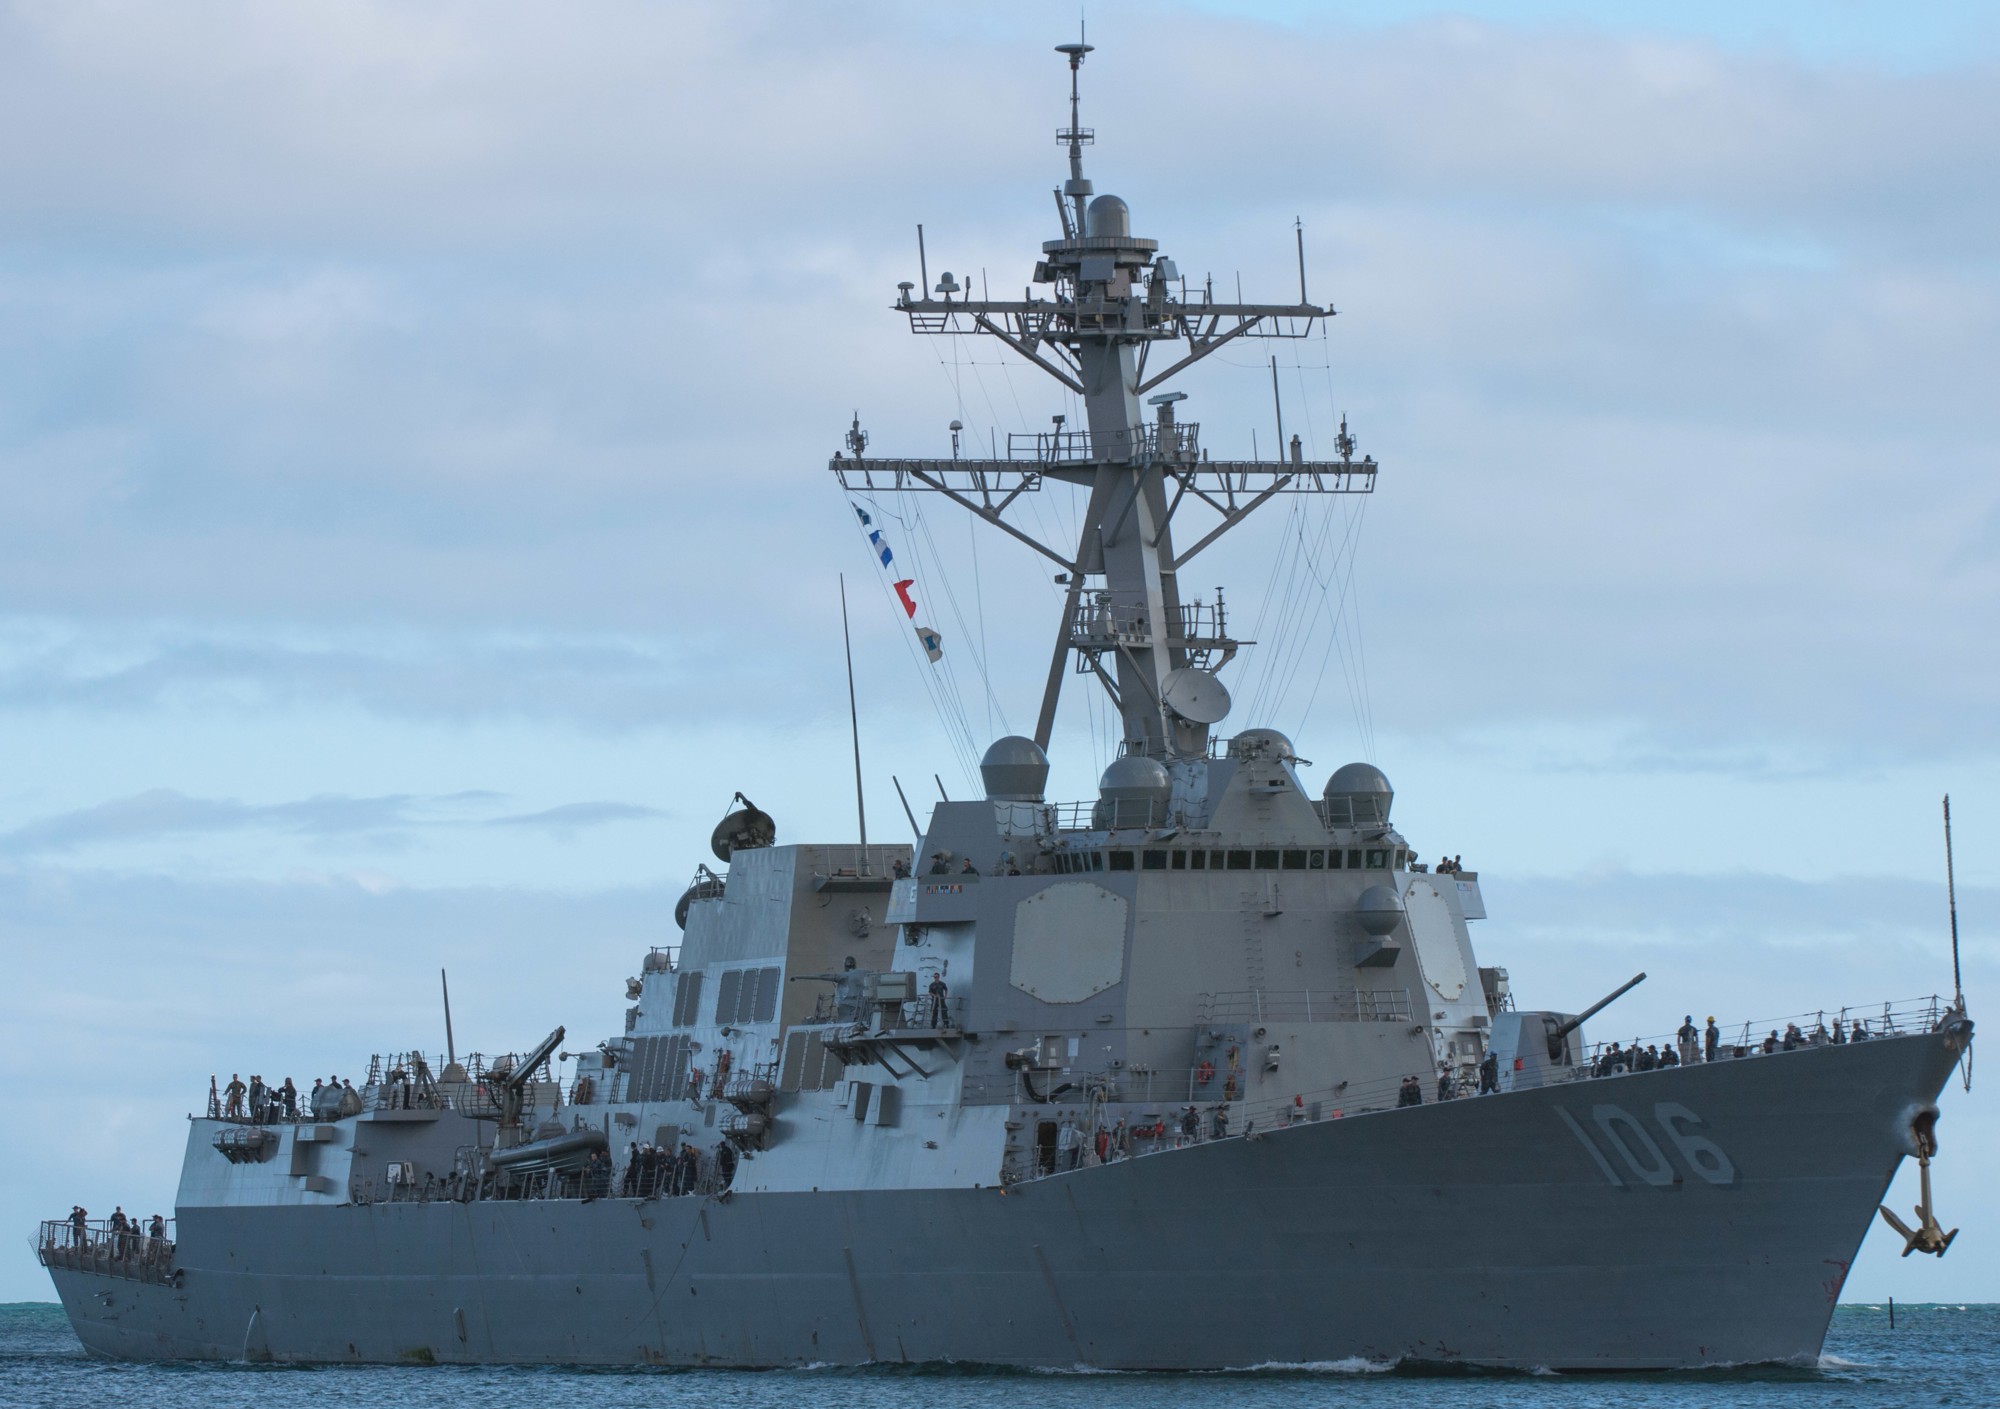 ddg-106 uss stockdale arleigh burke class guided missile destroyer aegis us navy rimpac pearl harbor hawaii 101